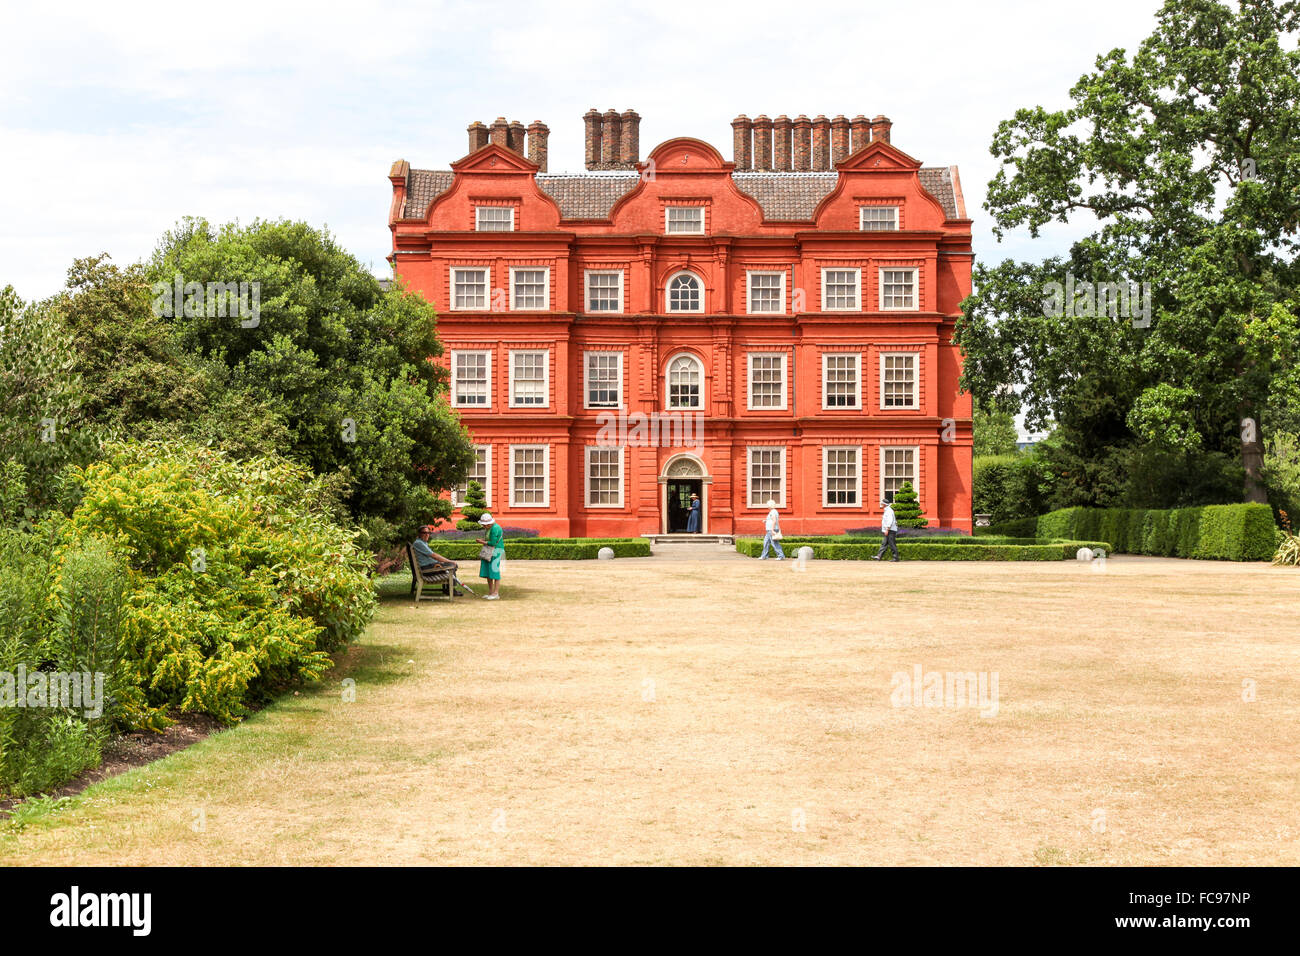 Kew Palace dans les jardins botaniques royaux de Kew Gardens London England UK Banque D'Images